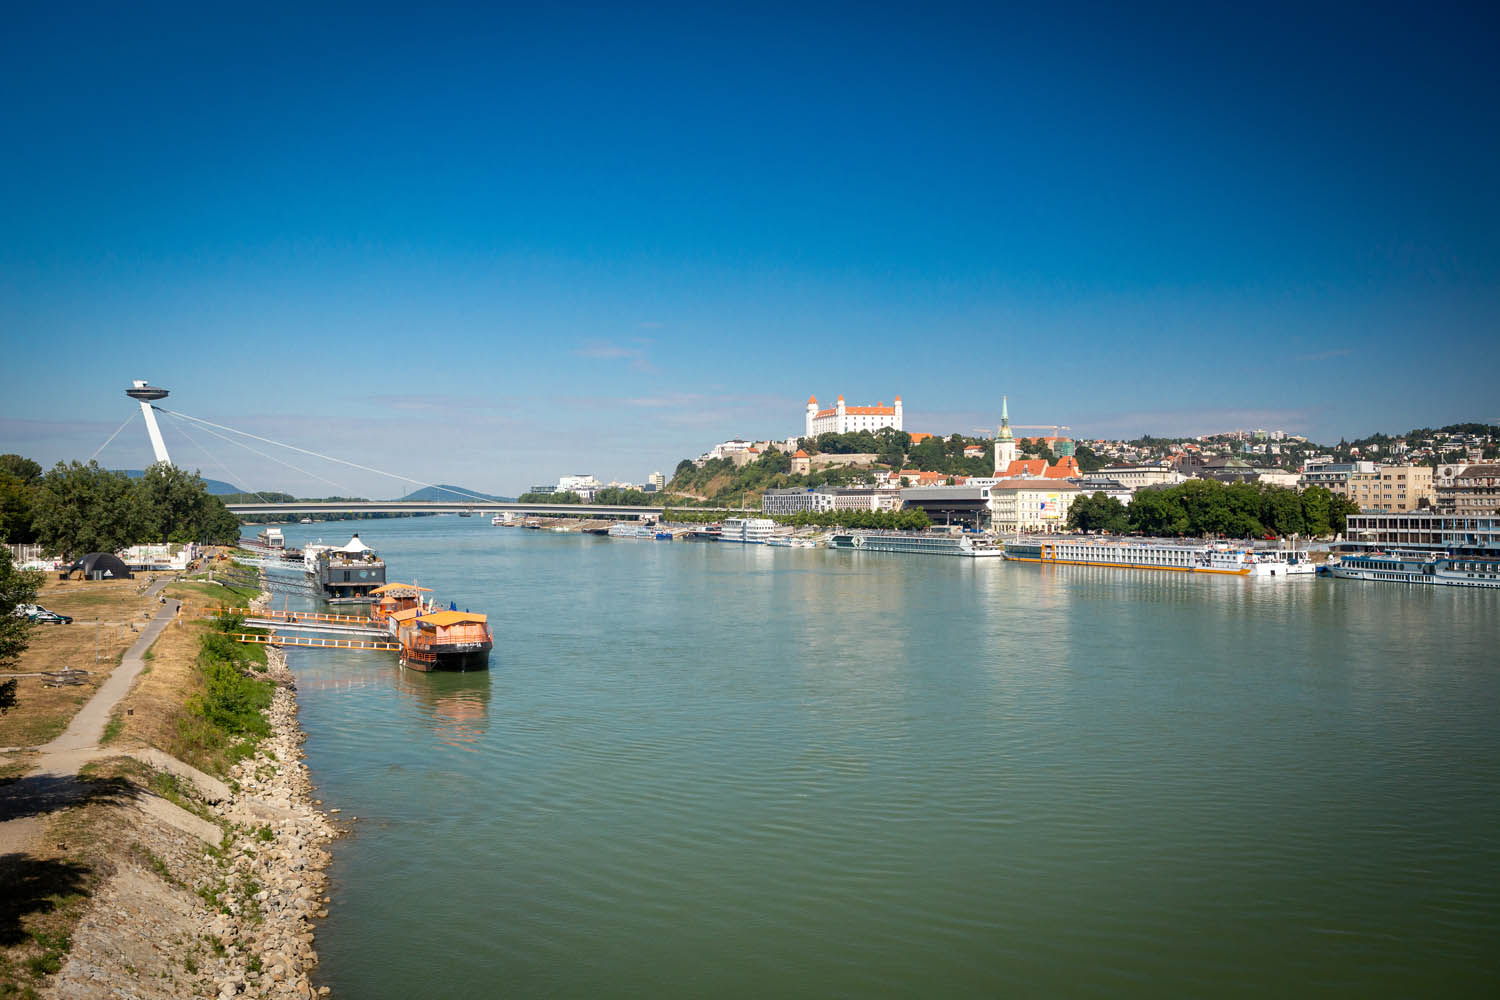 Uitzicht over Bratislava vanaf de brug met de Donau en het kasteel